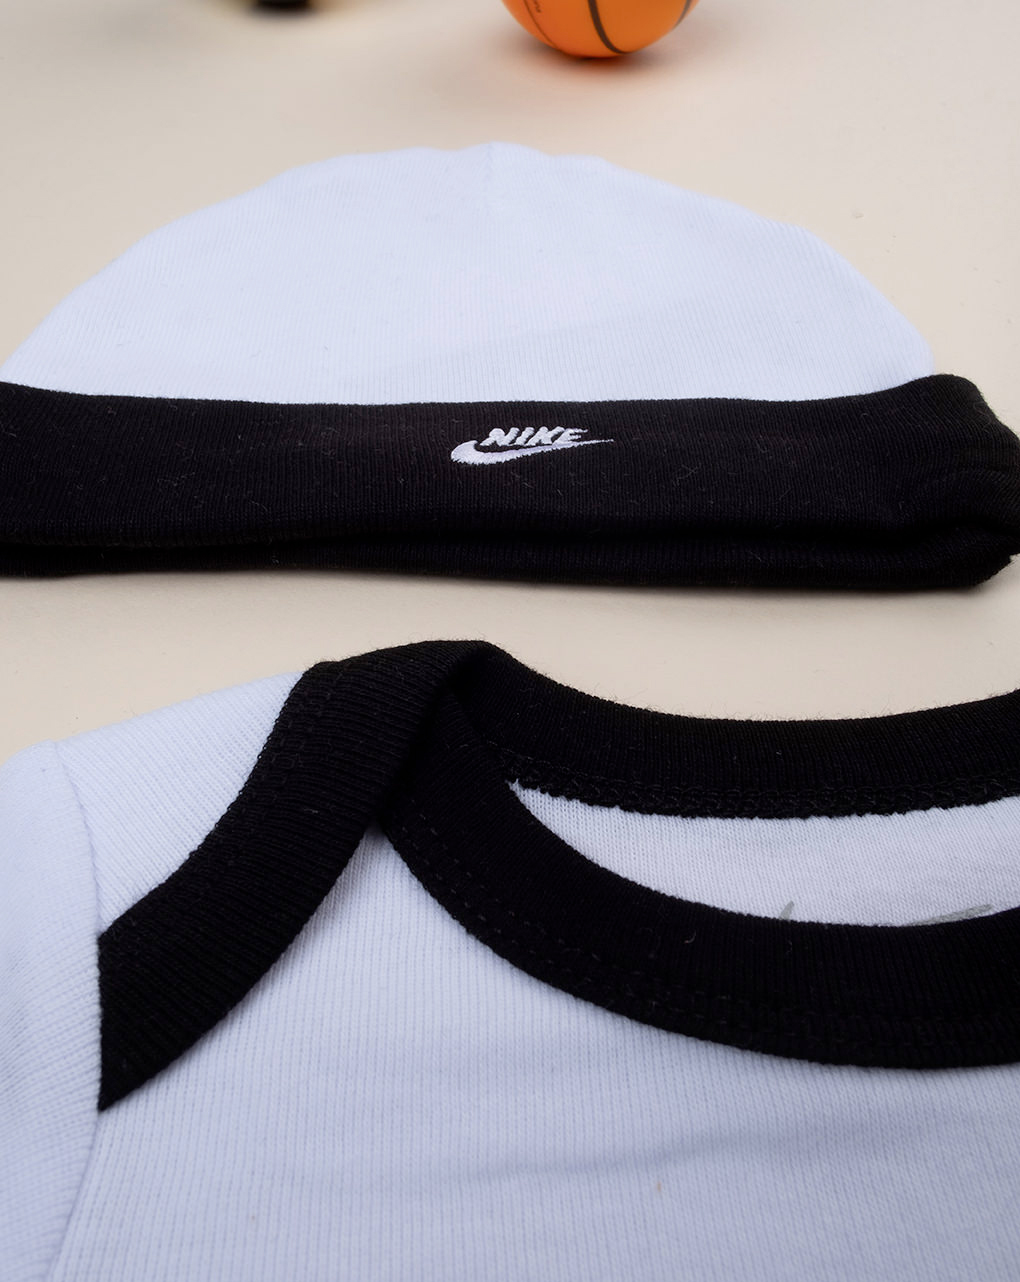 Conjunto de 3 piezas gorra nike + maillot + zapatillas blanco y negro - Nike